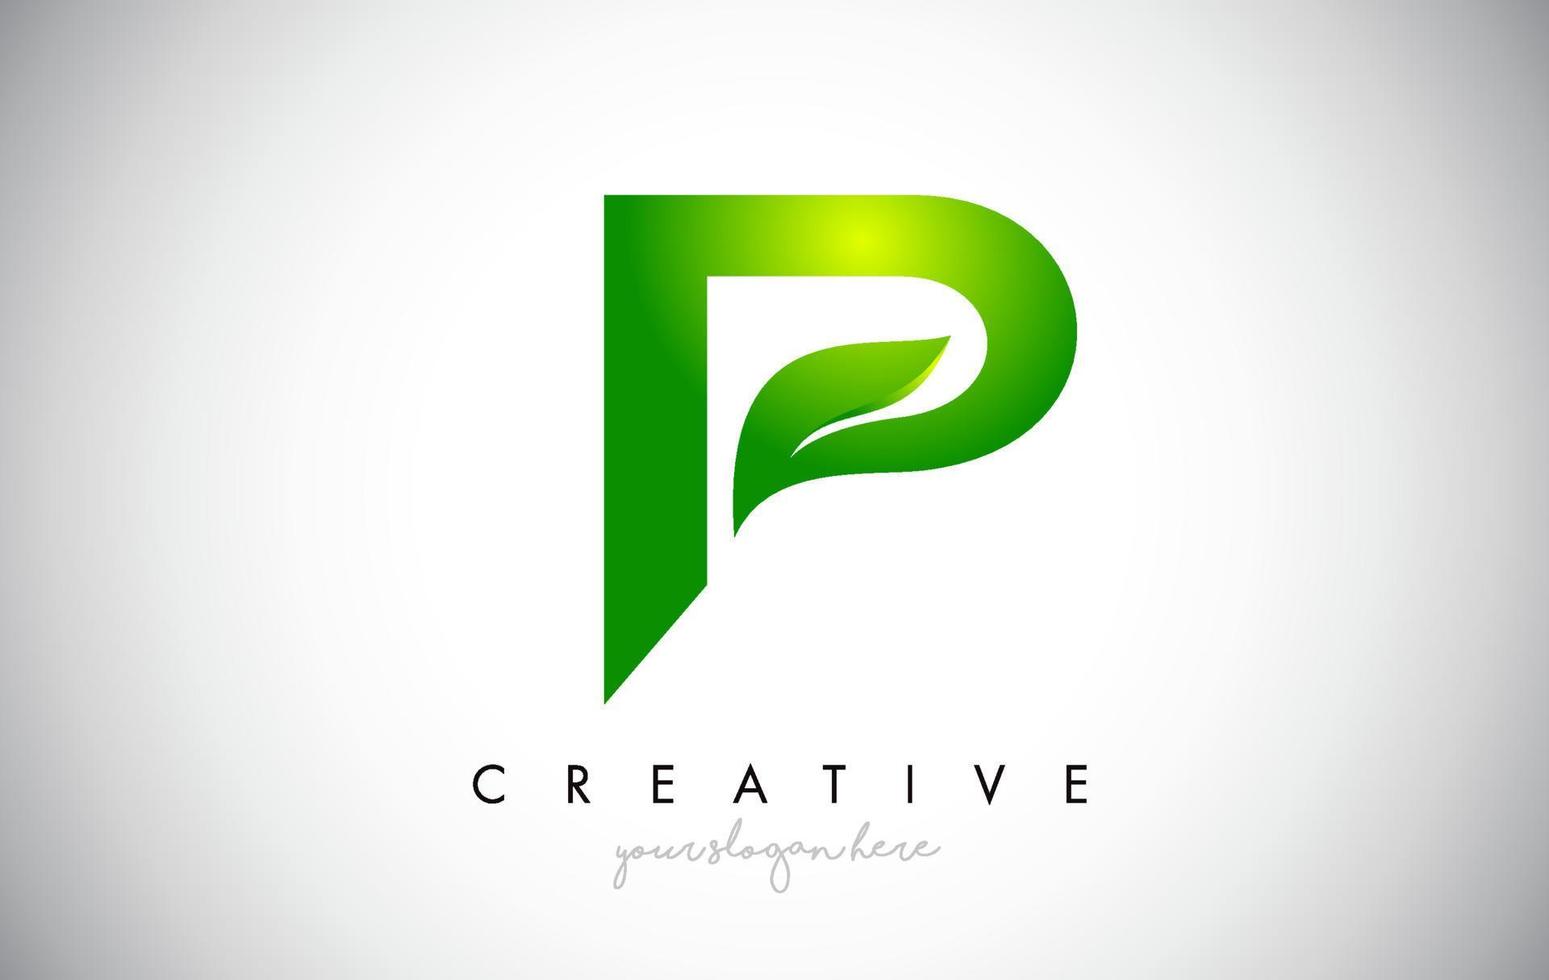 P Leaf Letter Logo Icon Design in Green Colors Vector Illustration.